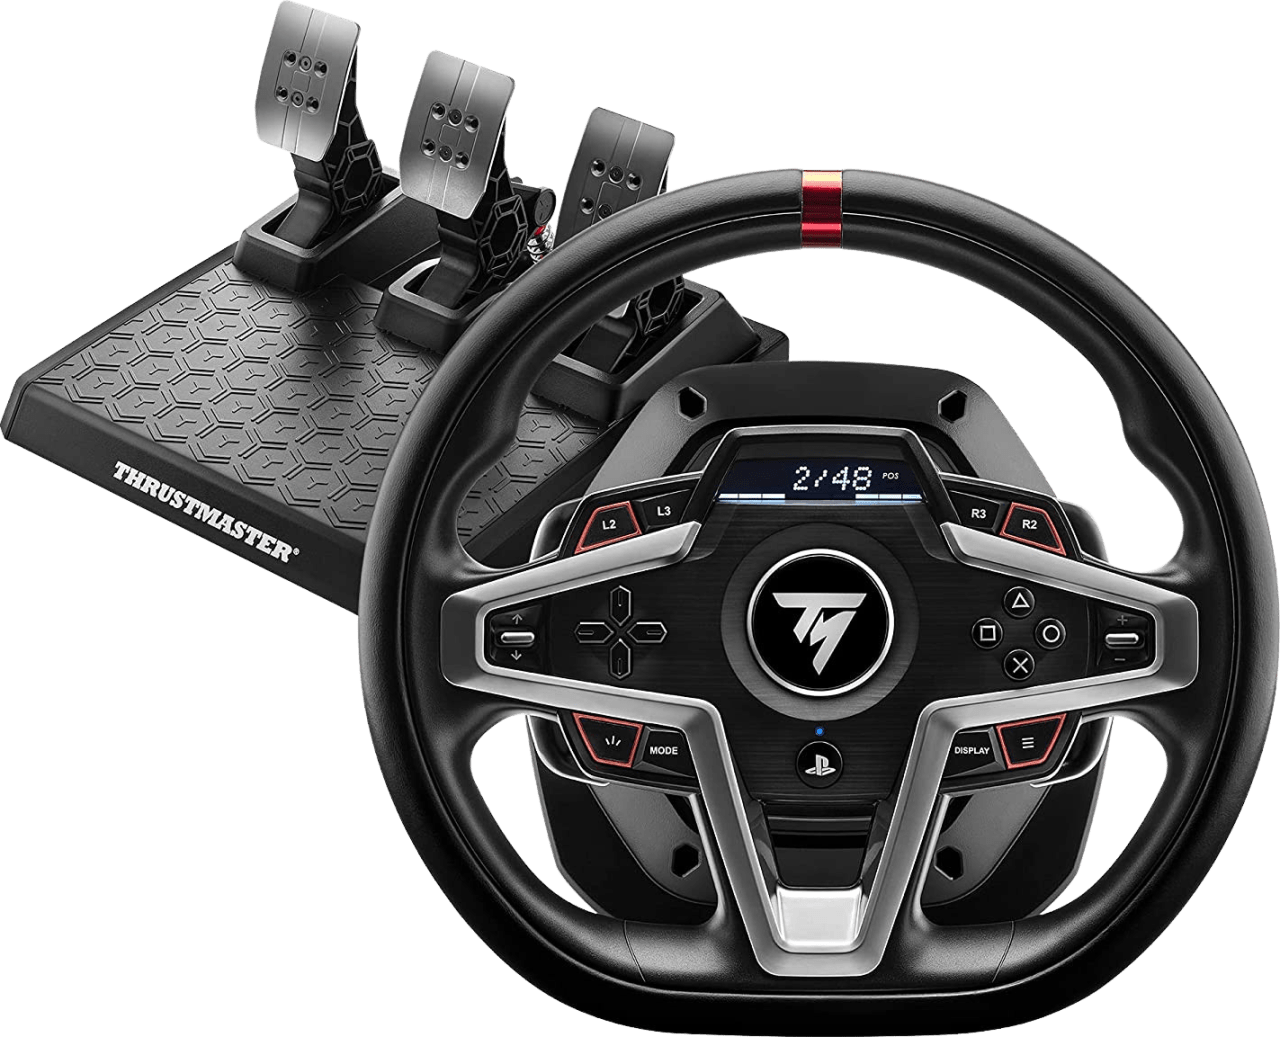 Black Thrustmaster T248 Racing Steering Wheel.1